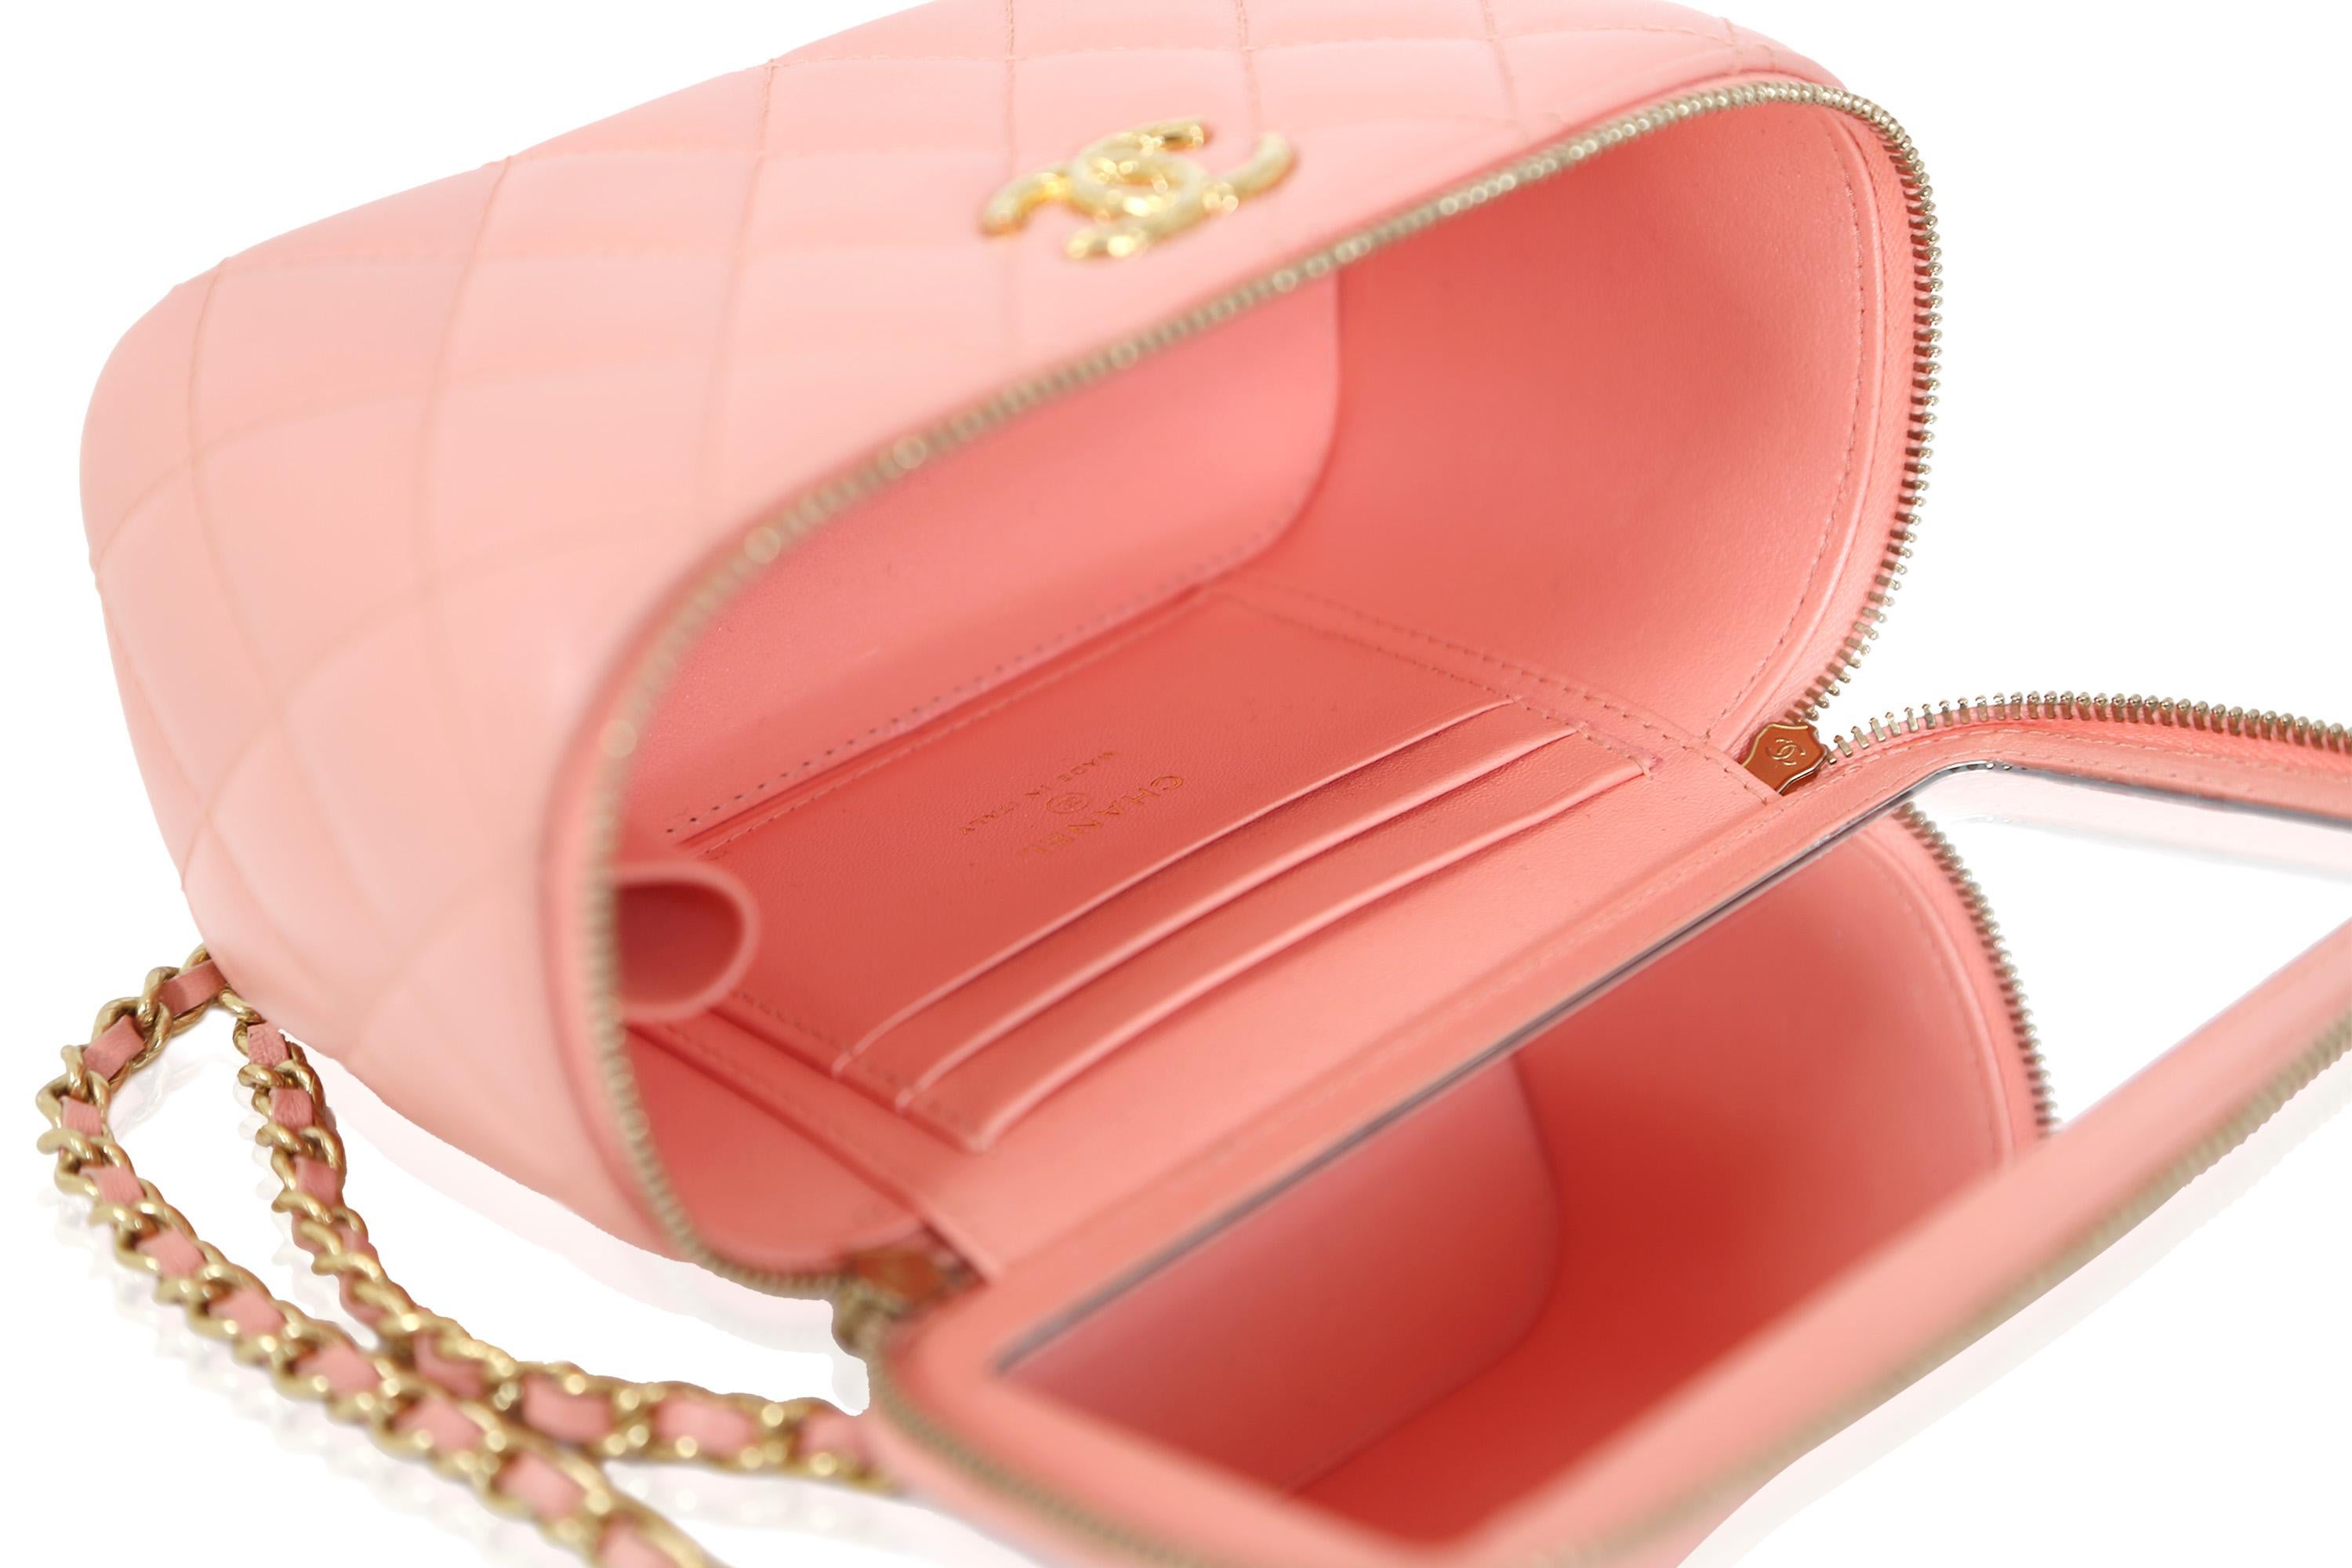 Chanel Vanity Case Pink Leather Handbag For Sale 2